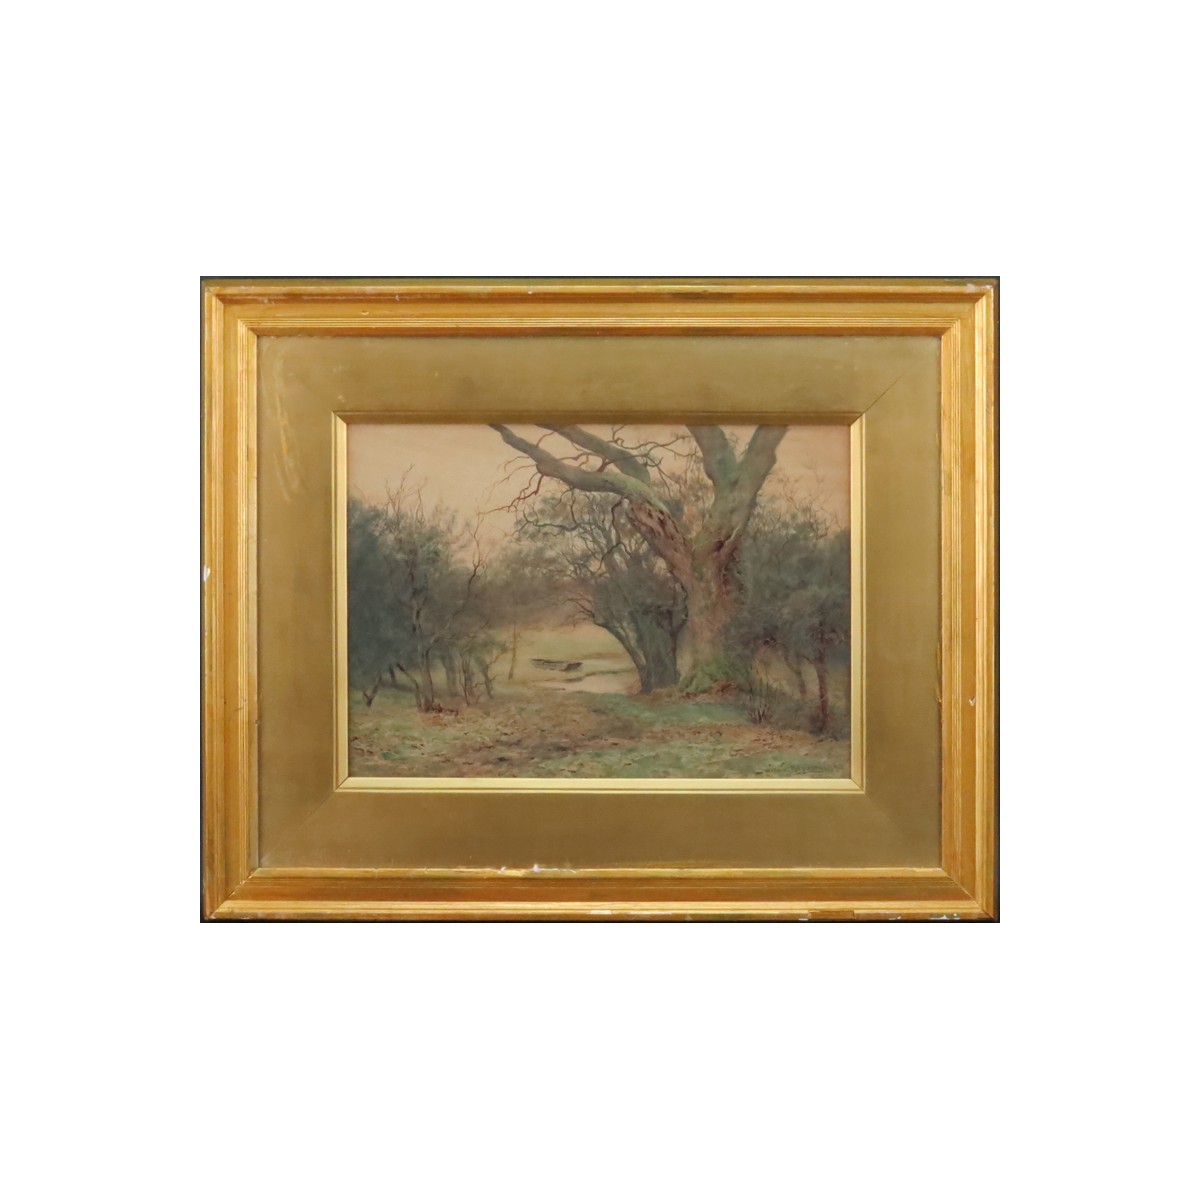 Wilmot Pilsbury, British (1840-1908) Watercolor "T